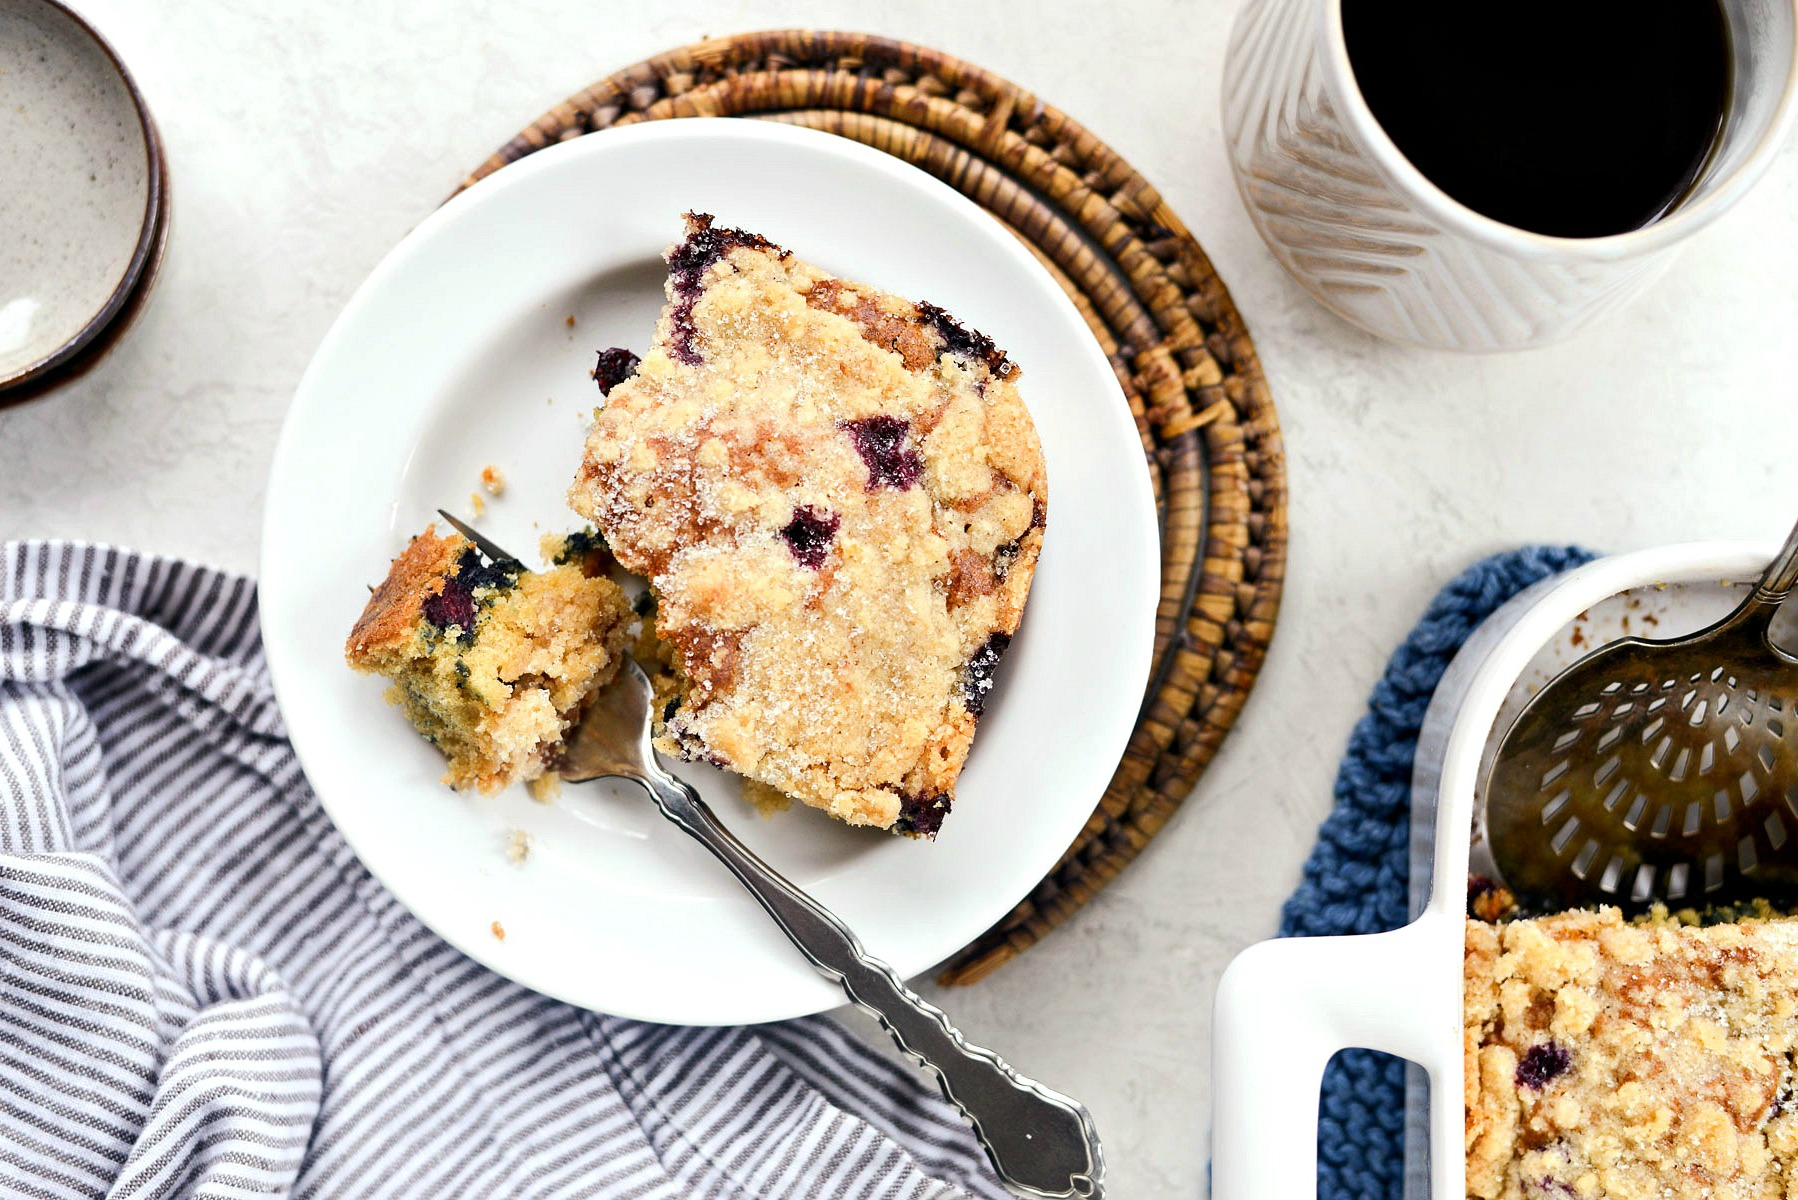 Blueberry-Crumb-Cake-l-SimplyScratch.com-homemade-blueberry-crumbcake-fromscratch-cake-dessert-21